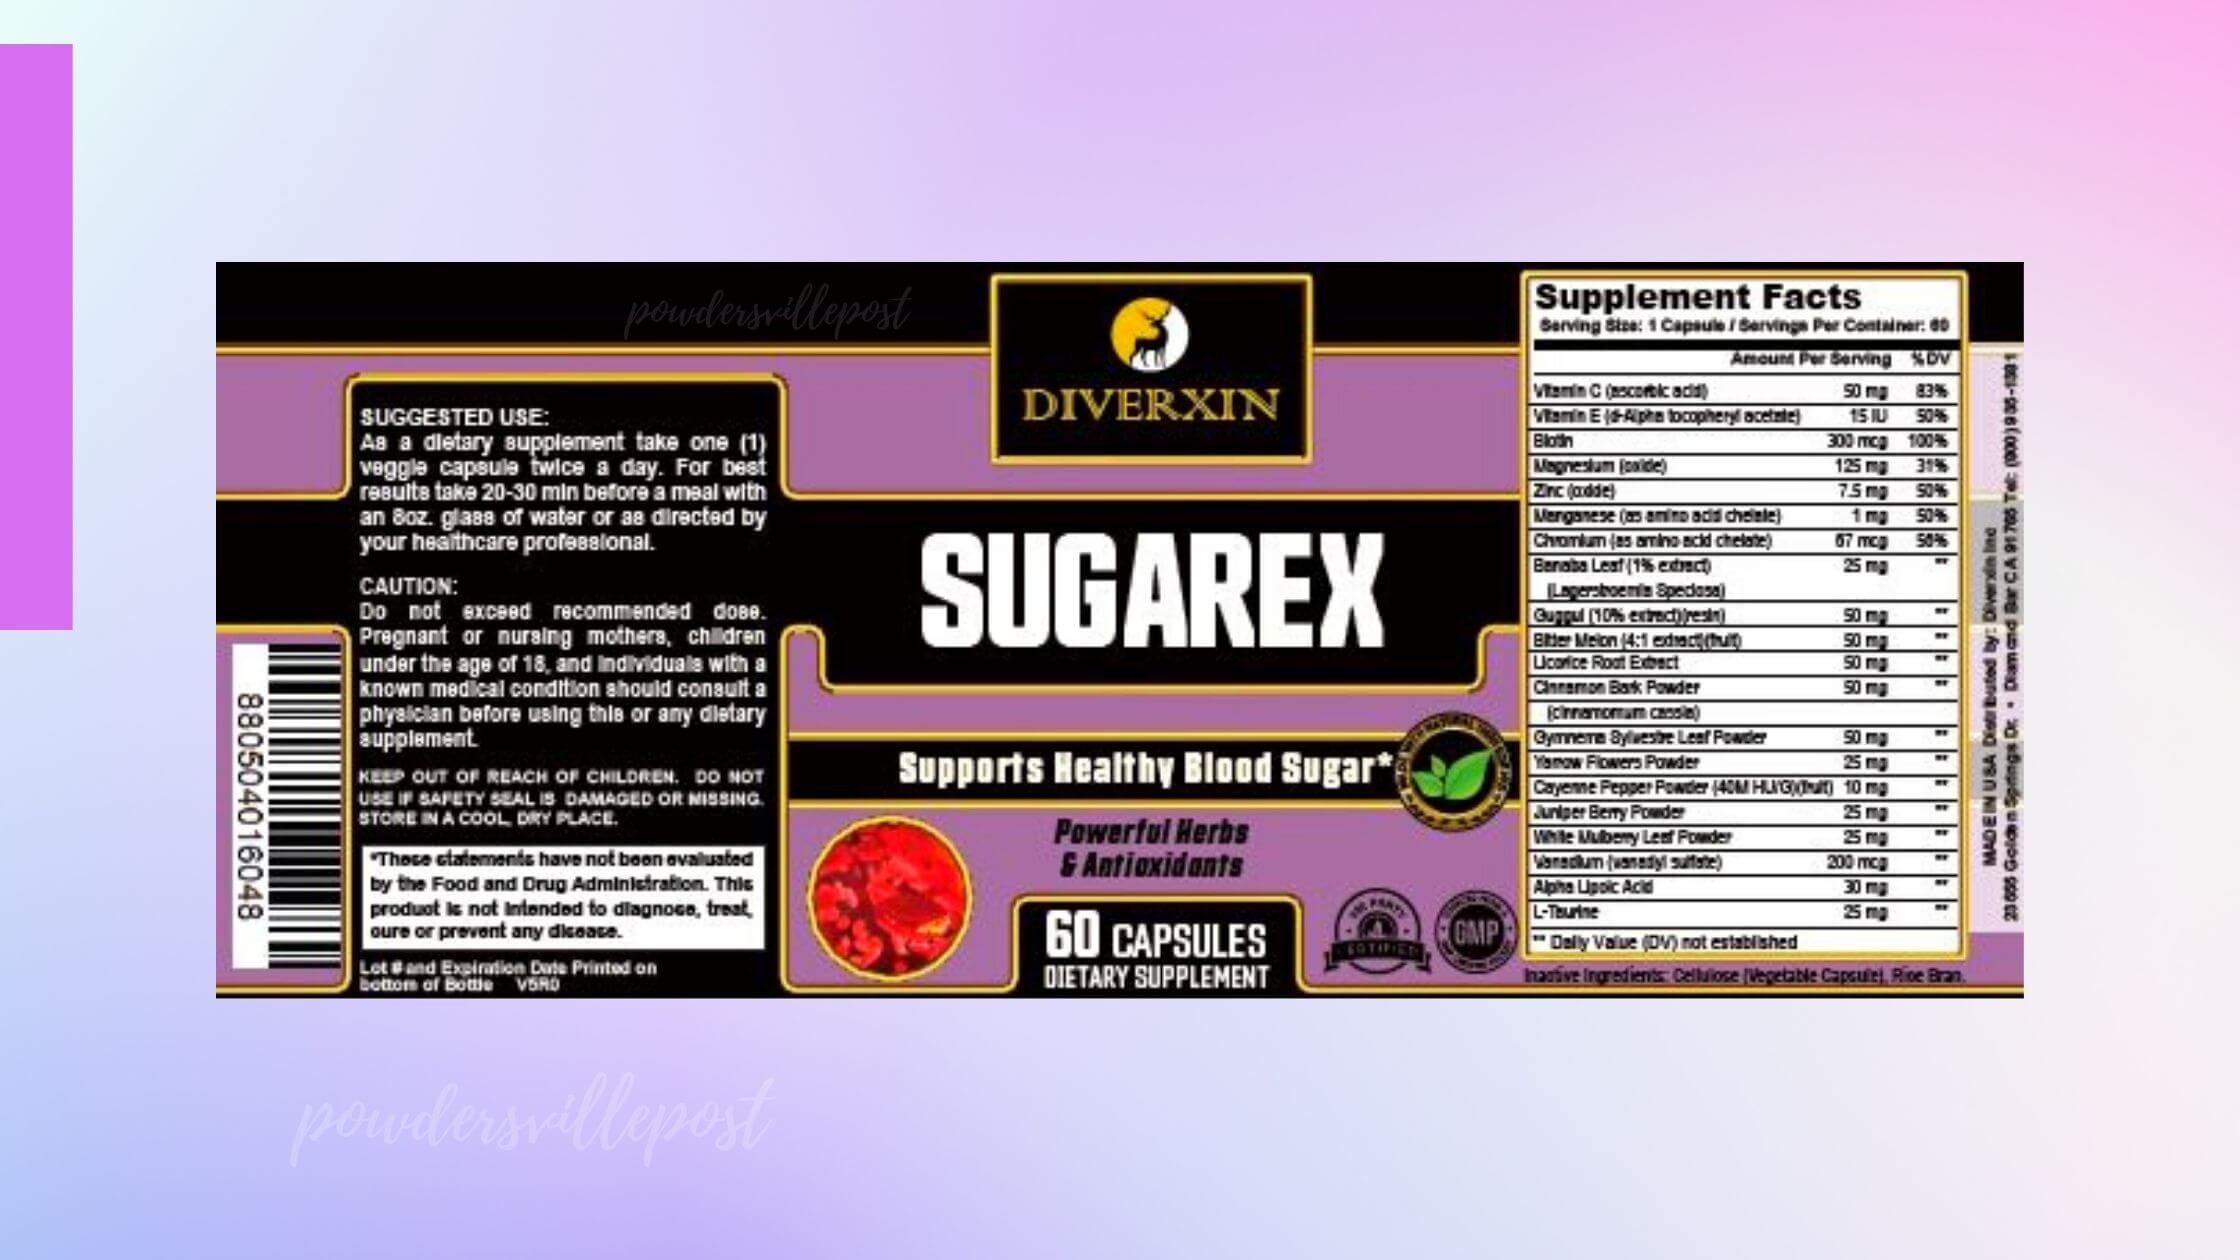 Diverxin SugaRex Dosage